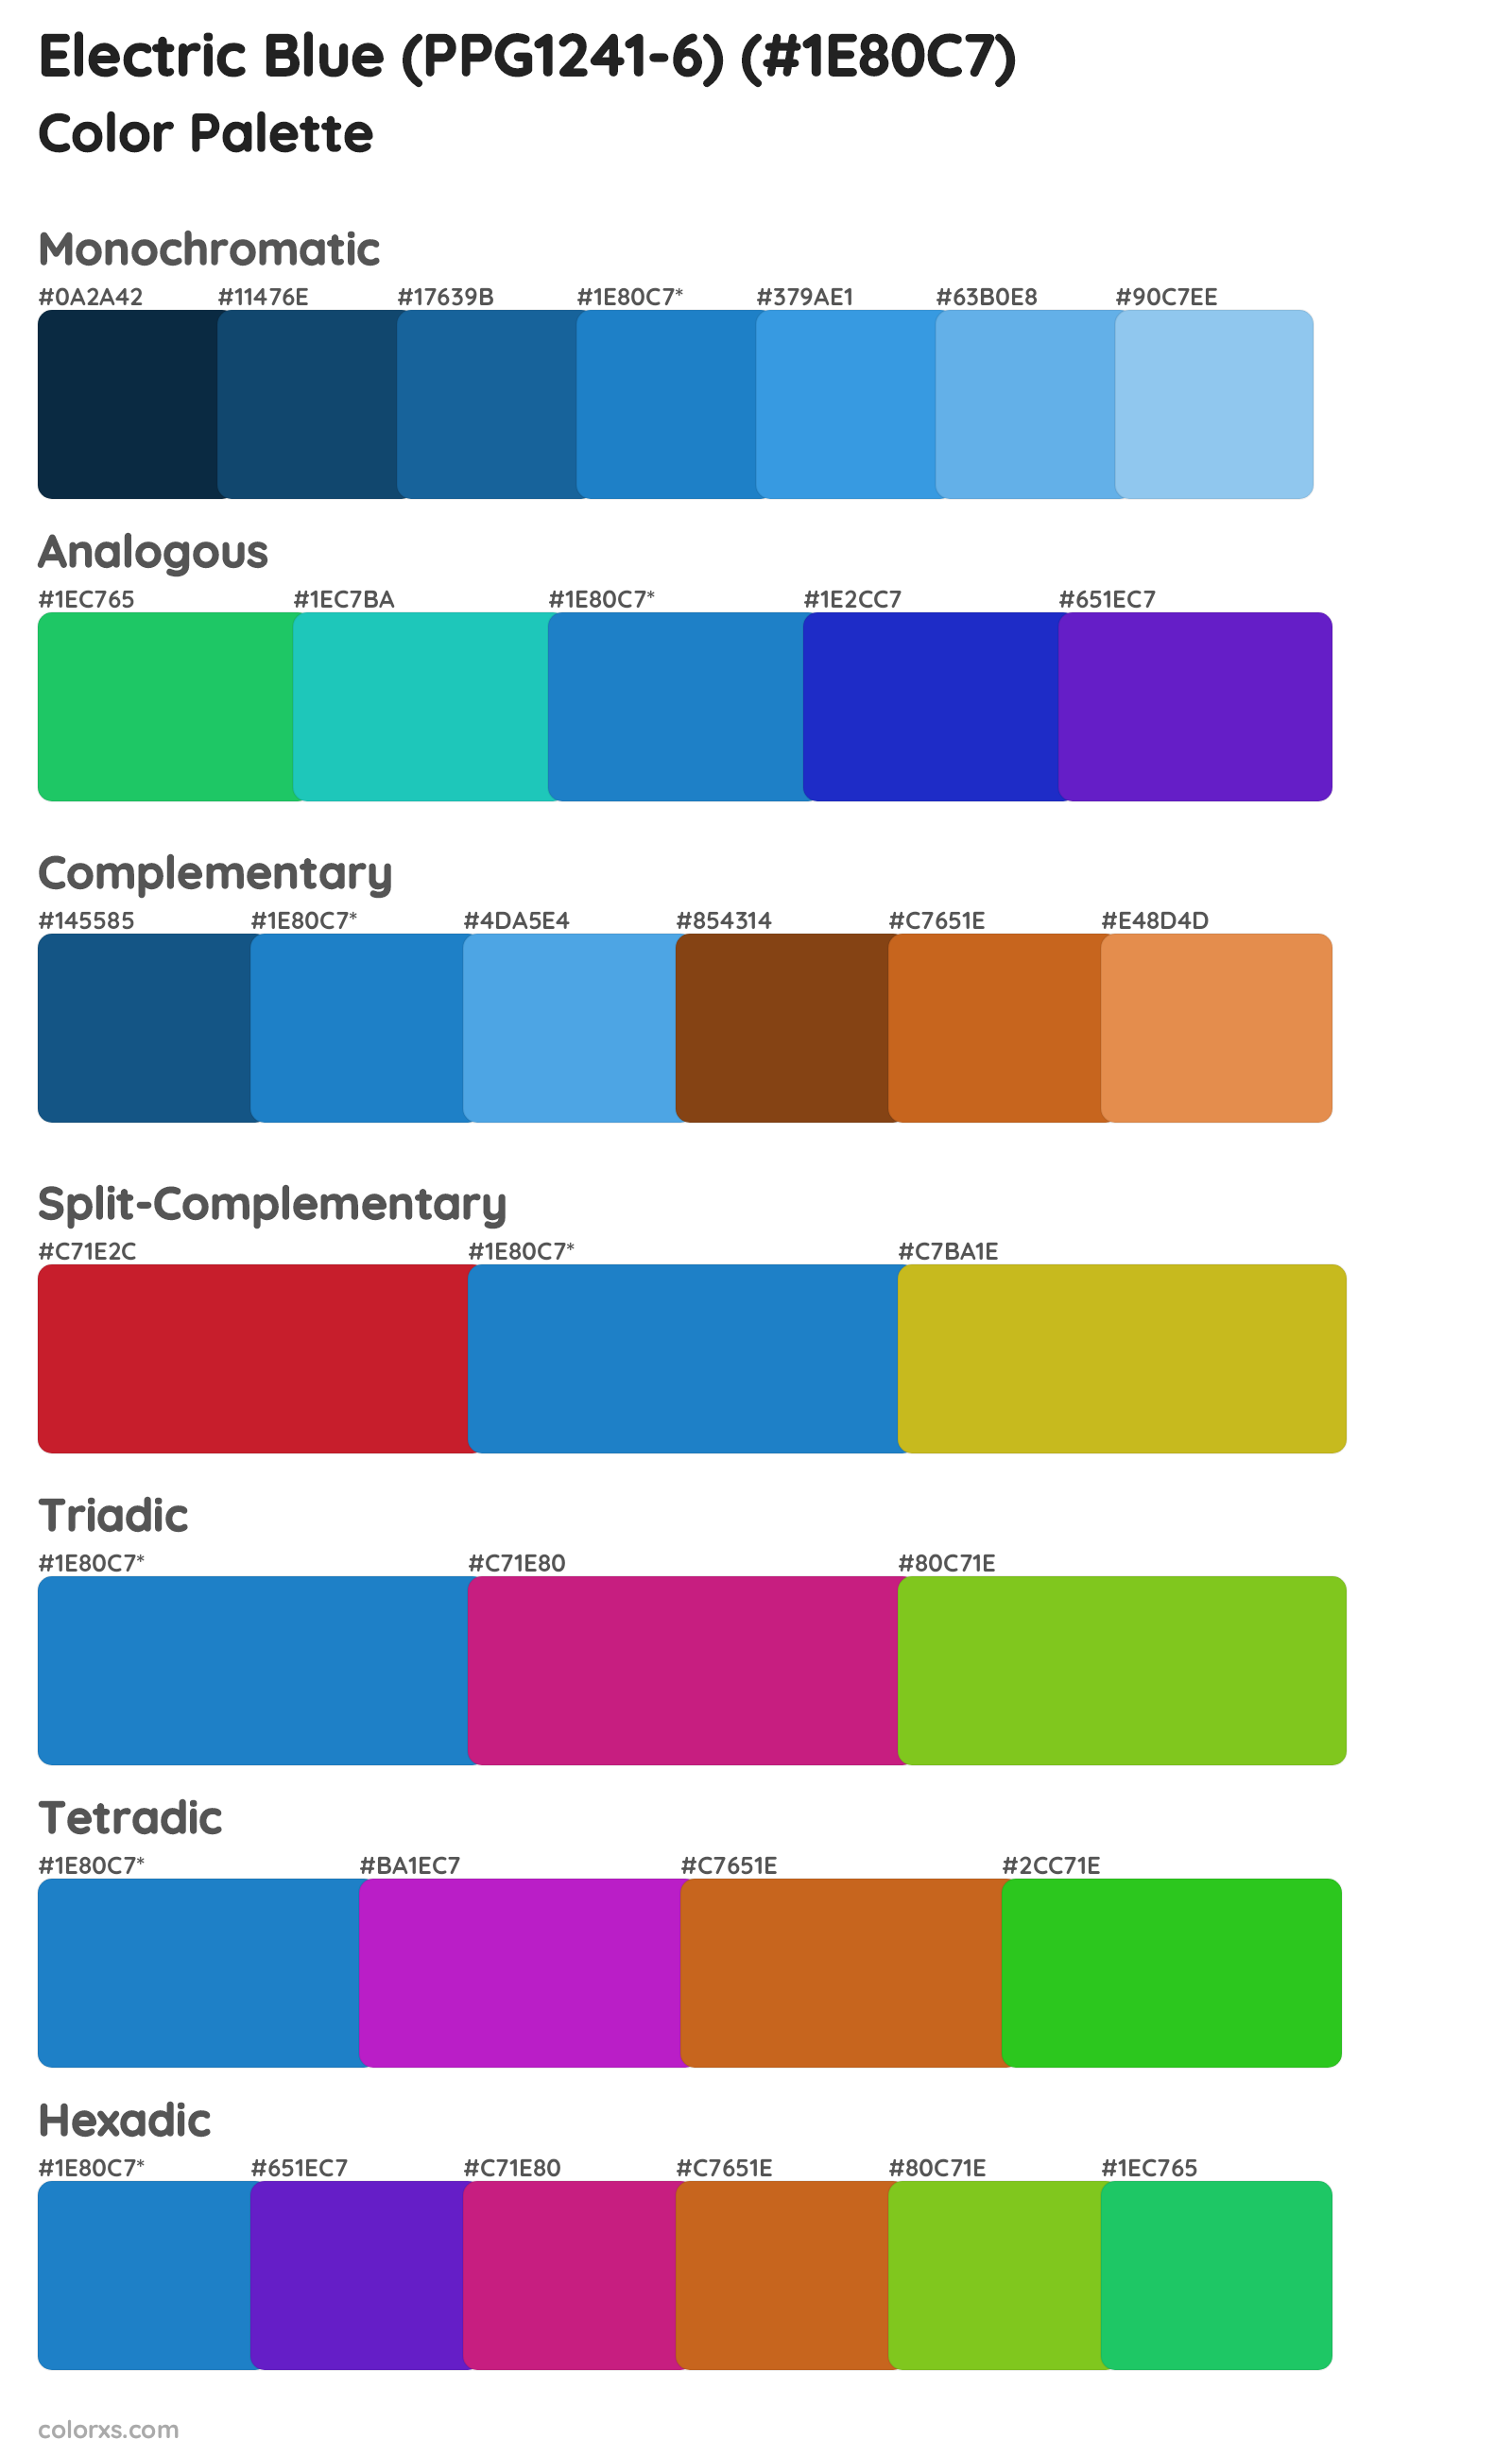 Electric Blue (PPG1241-6) Color Scheme Palettes